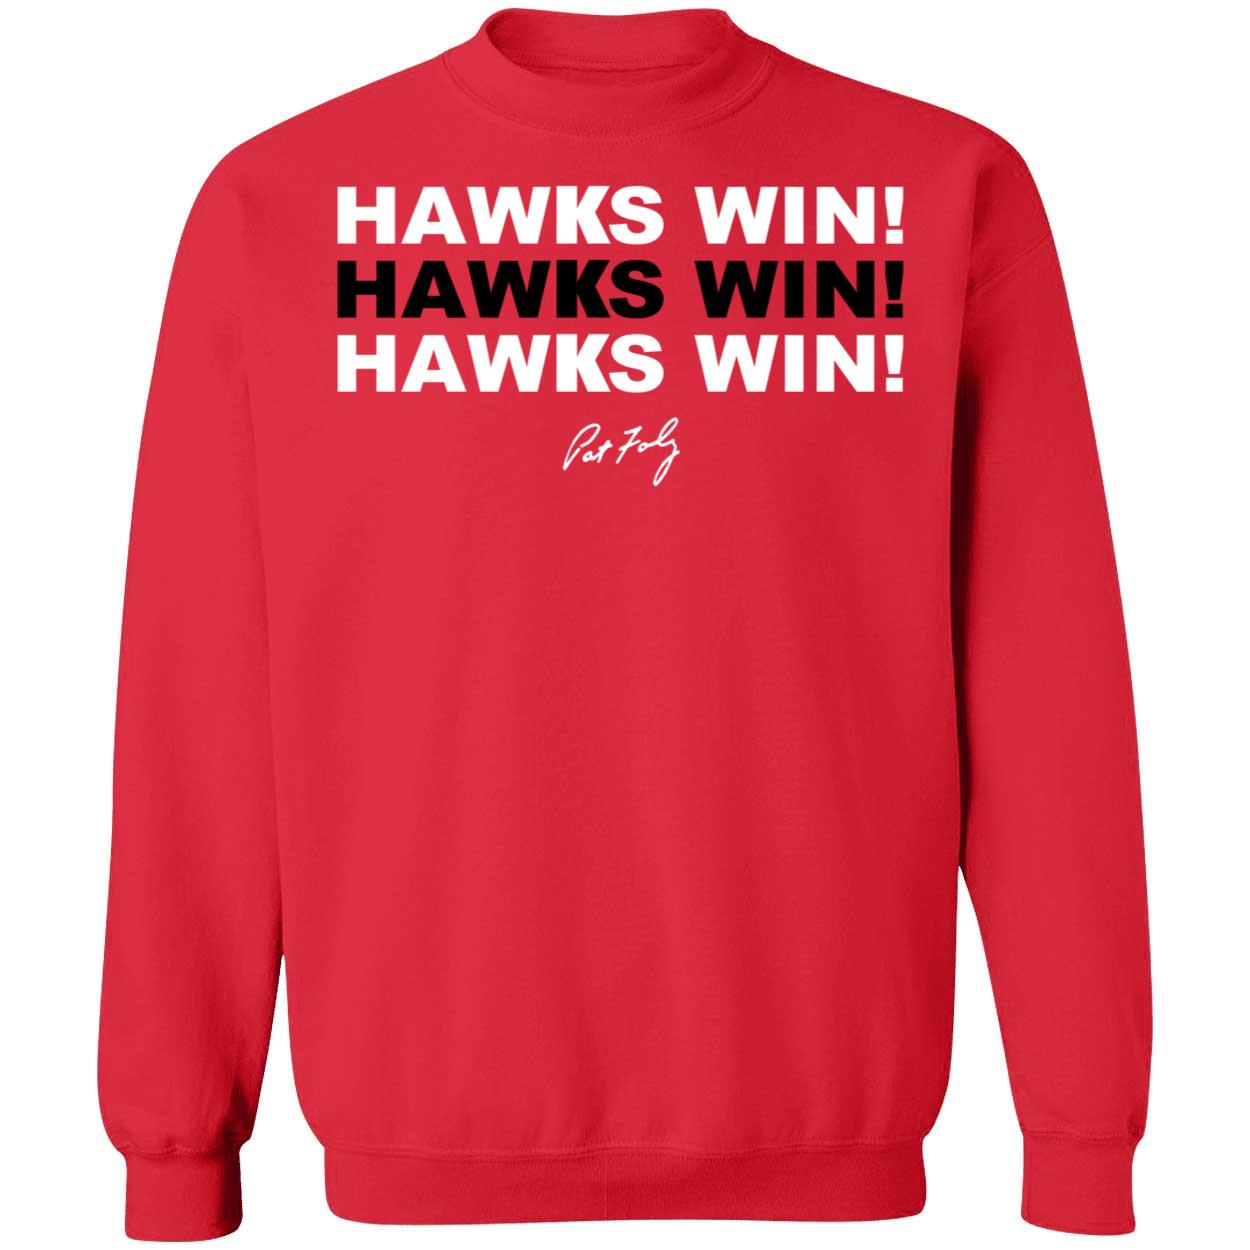 Hawks Win Hawks Win Hawks Win Sweatshirt